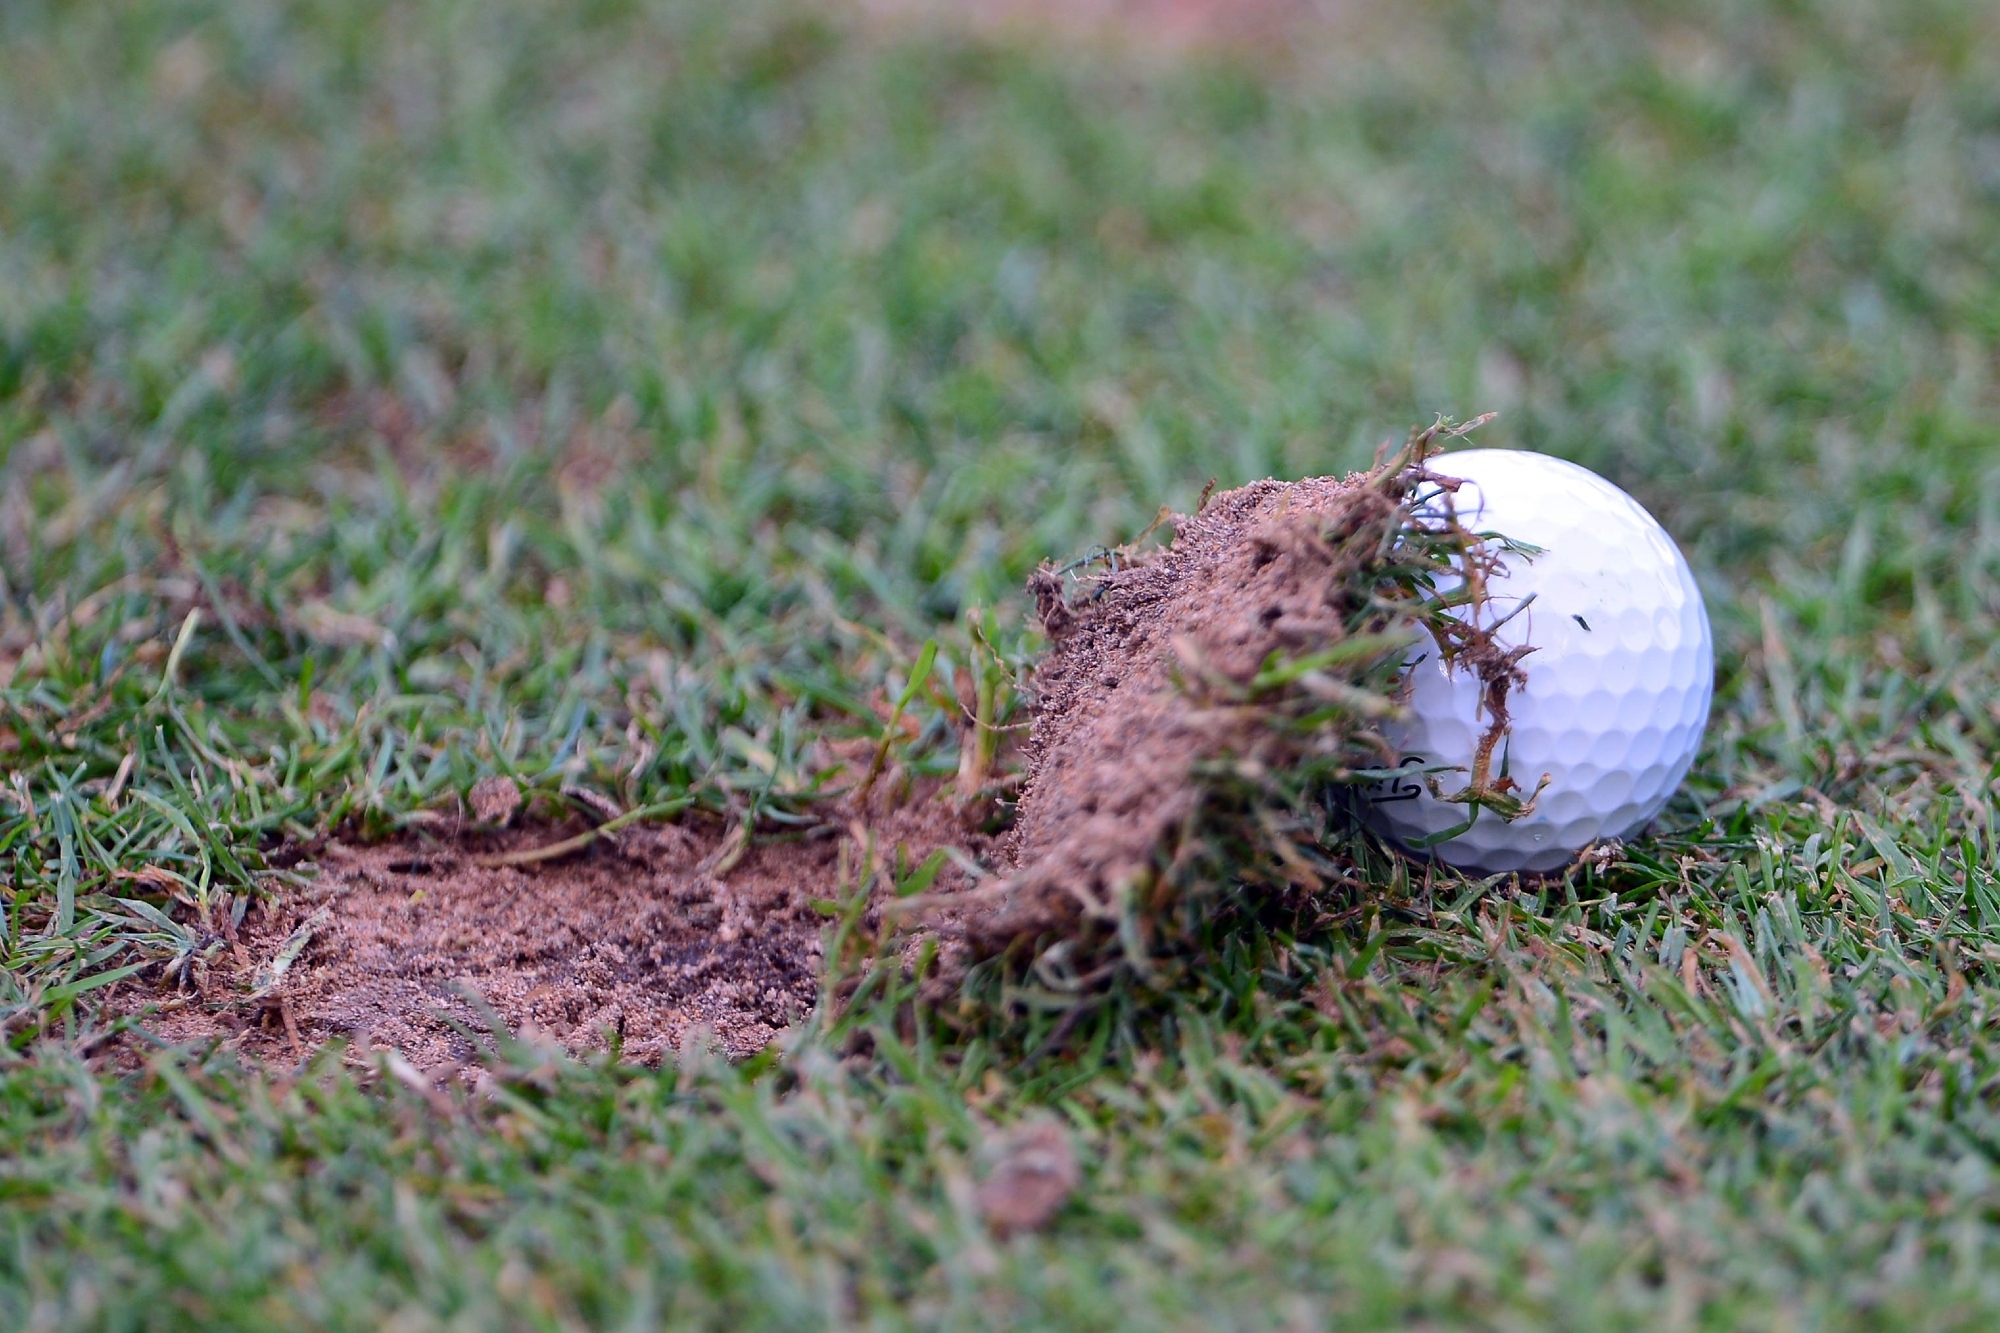 Golf ball under a divot